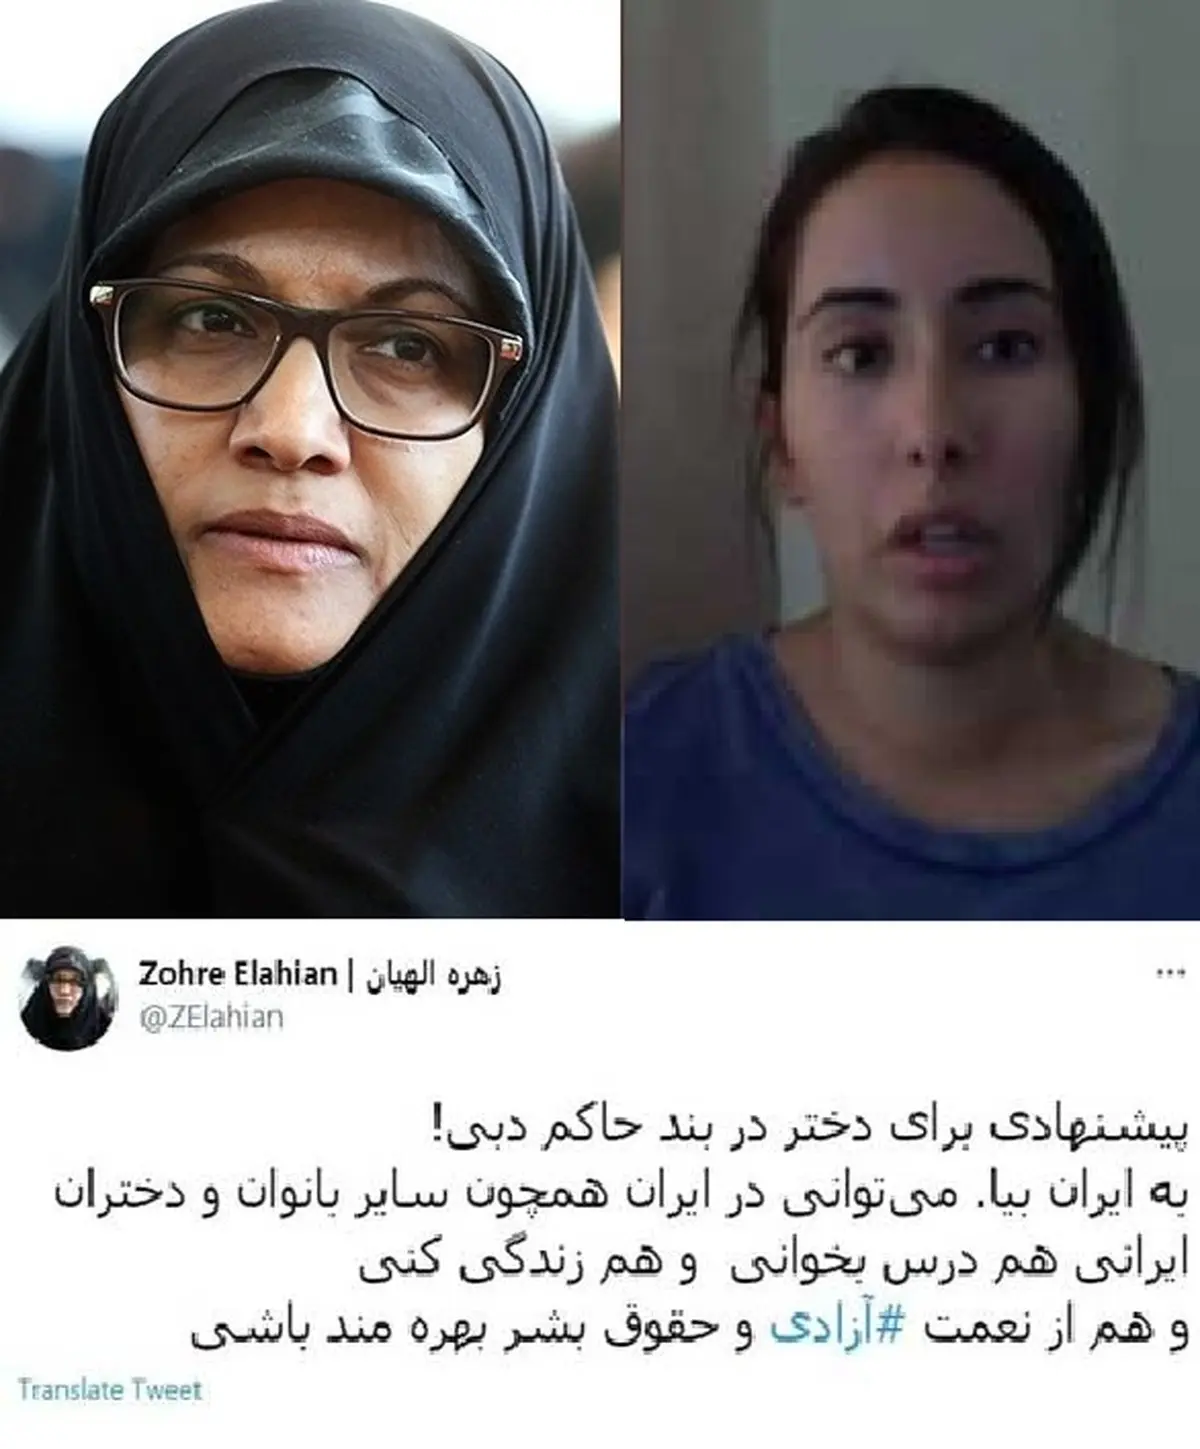  نماینده اصولگرا دختر حاکم دبی را برای بهره مند ی ازنعمت آزادی و حقوق بشر به ایران دعوت کرد
